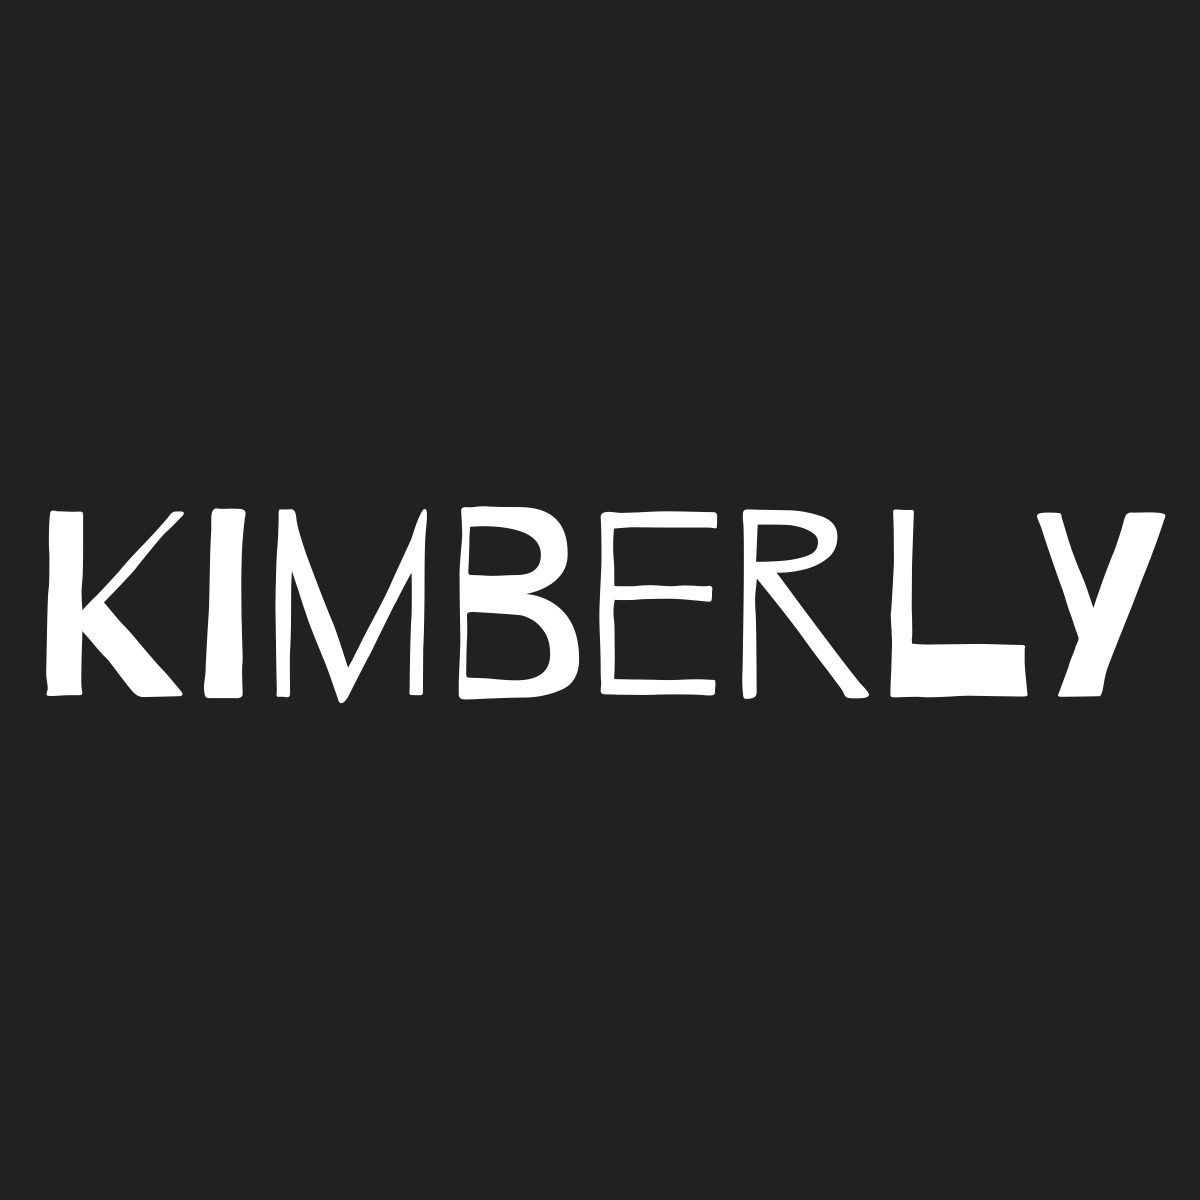 Kimberly Significado del nombre de mujer Kimberly